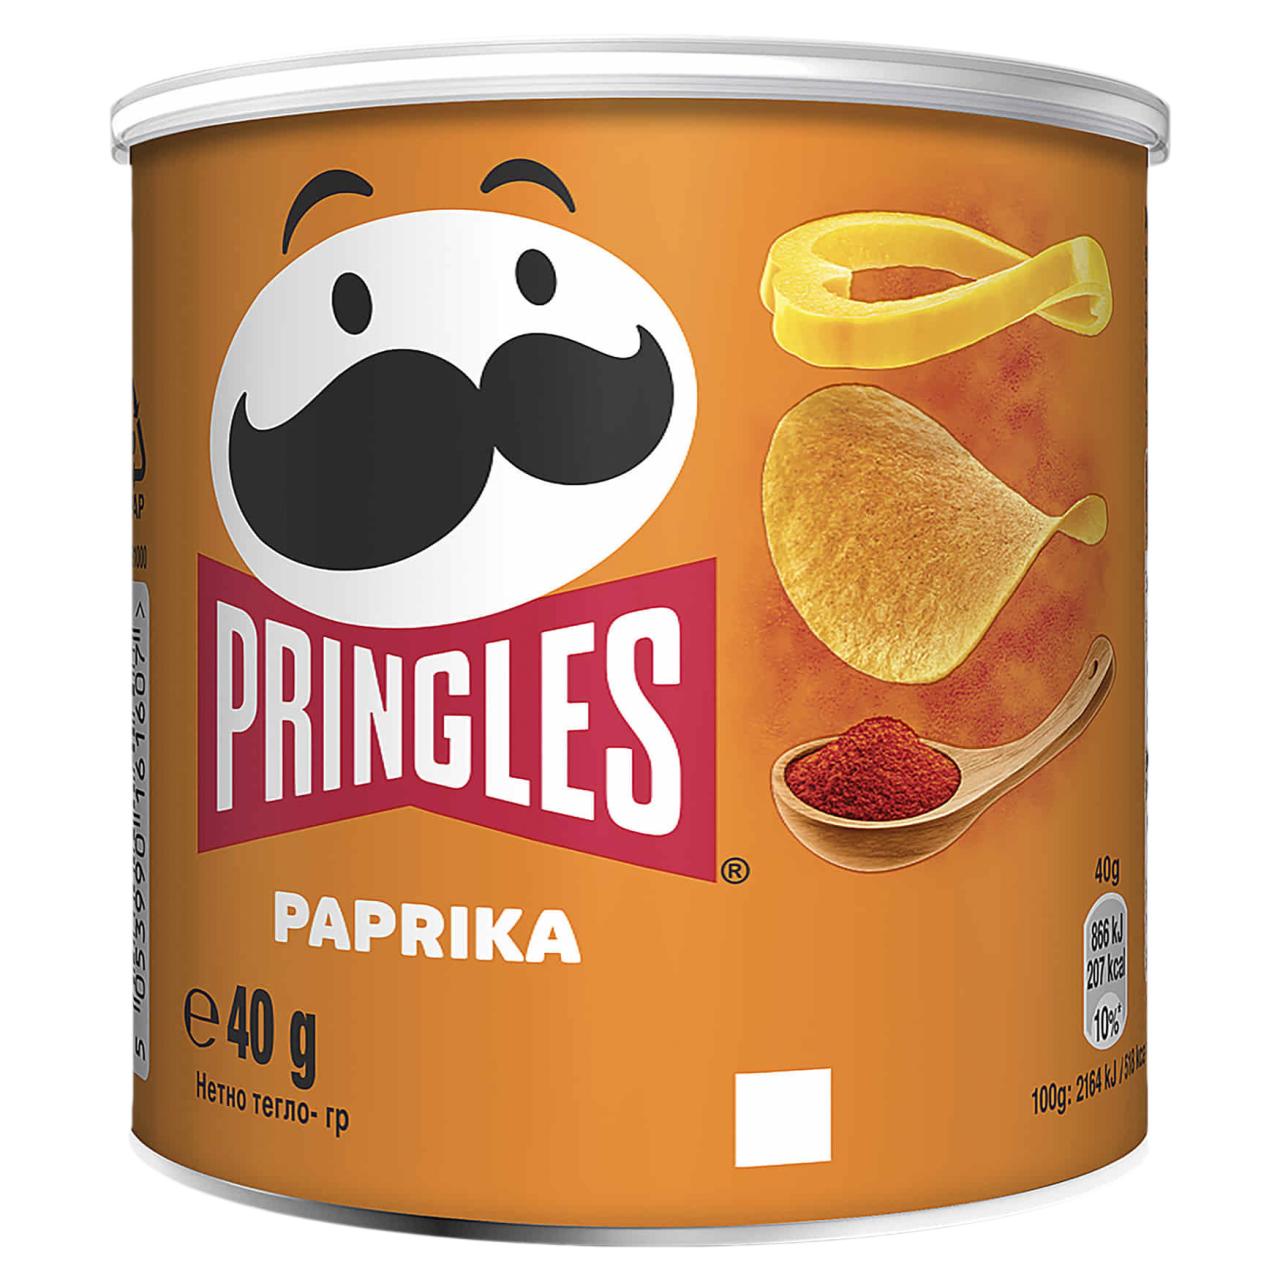 Pringles Paprika 12x40g